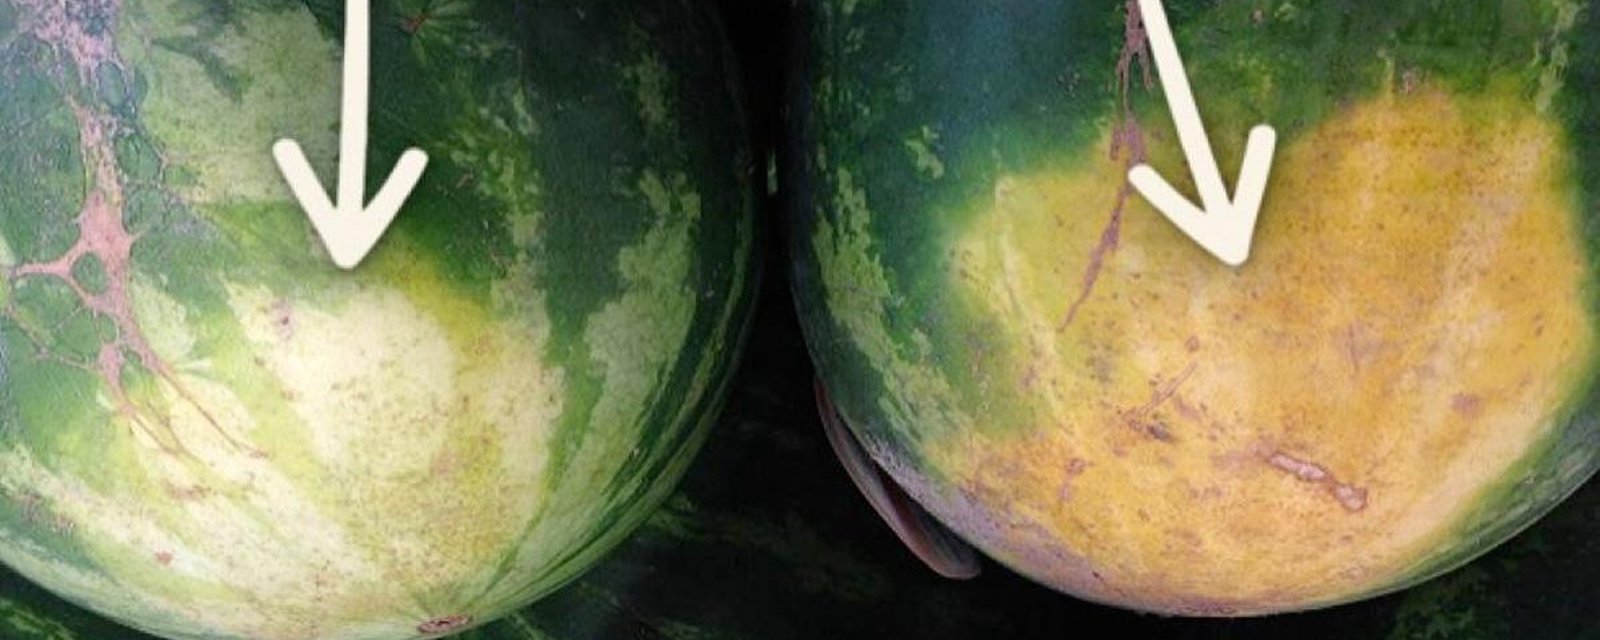 Un fermier expérimenté révèle les 5 choses qu'il faut regarder pour acheter le melon d'eau parfait.